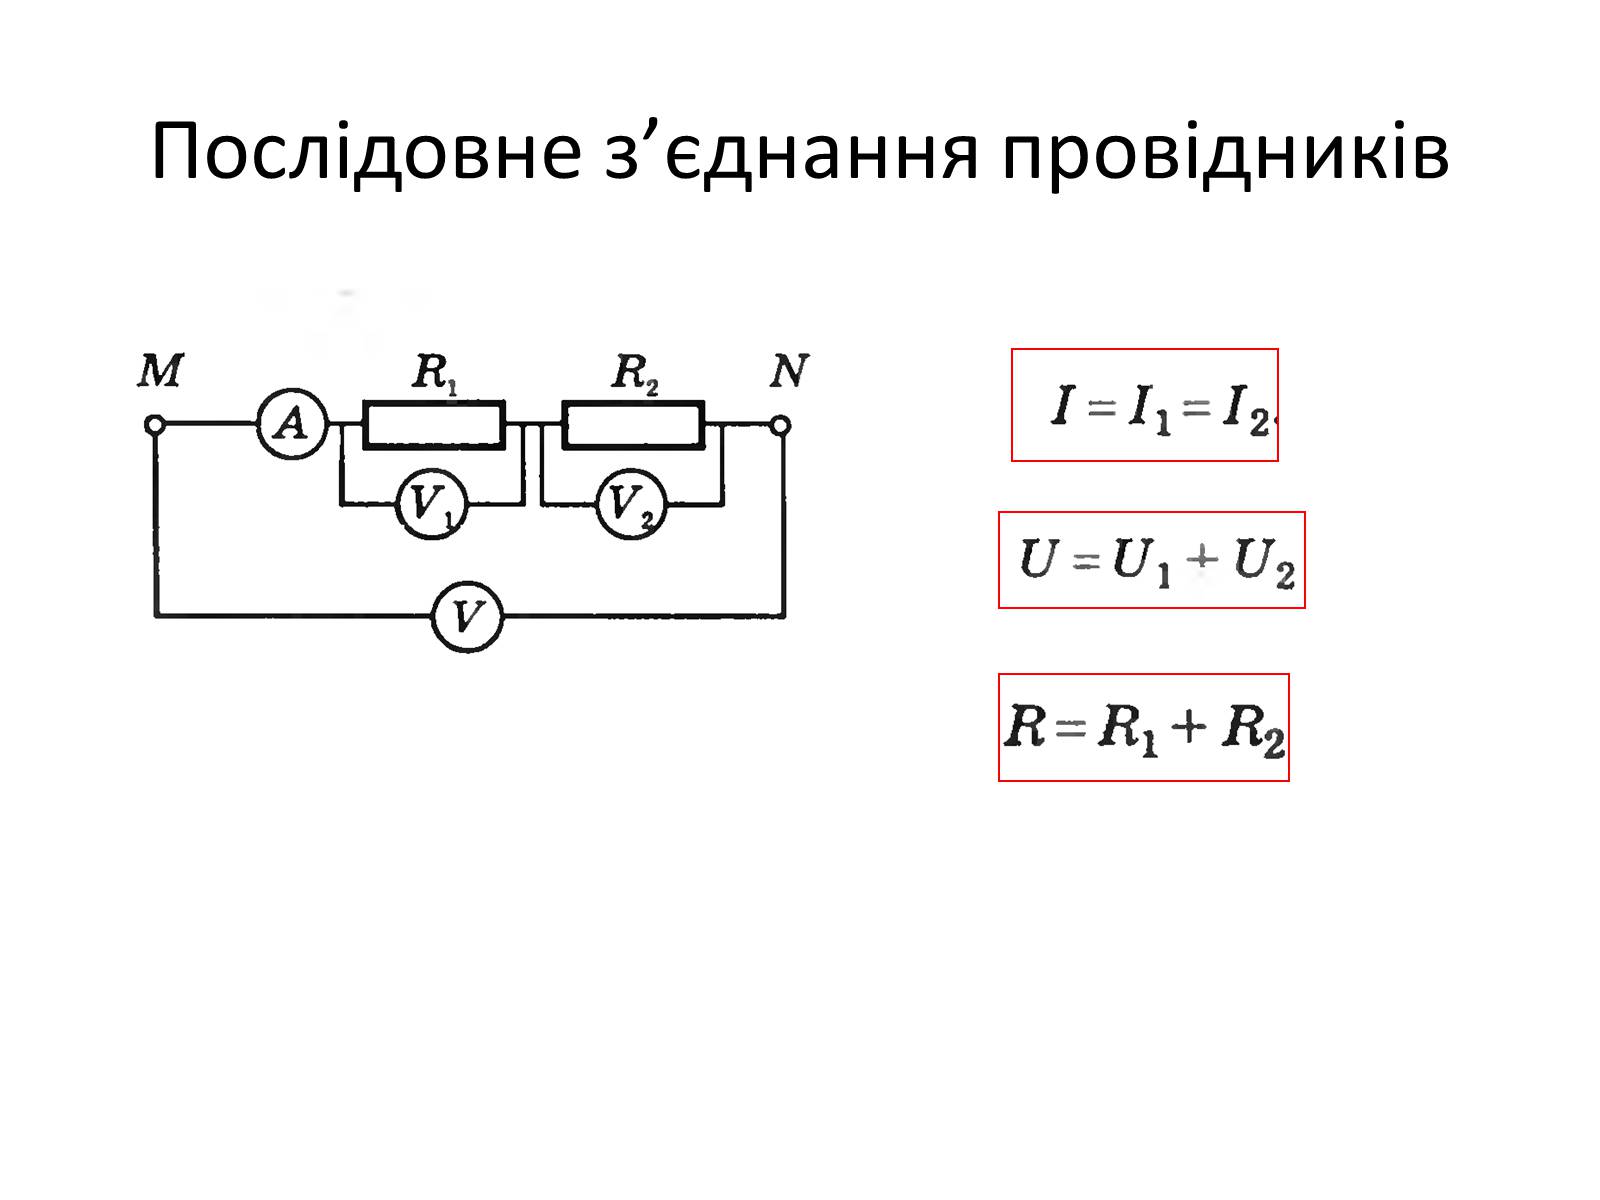 Последовательное соединение двух проводников схема